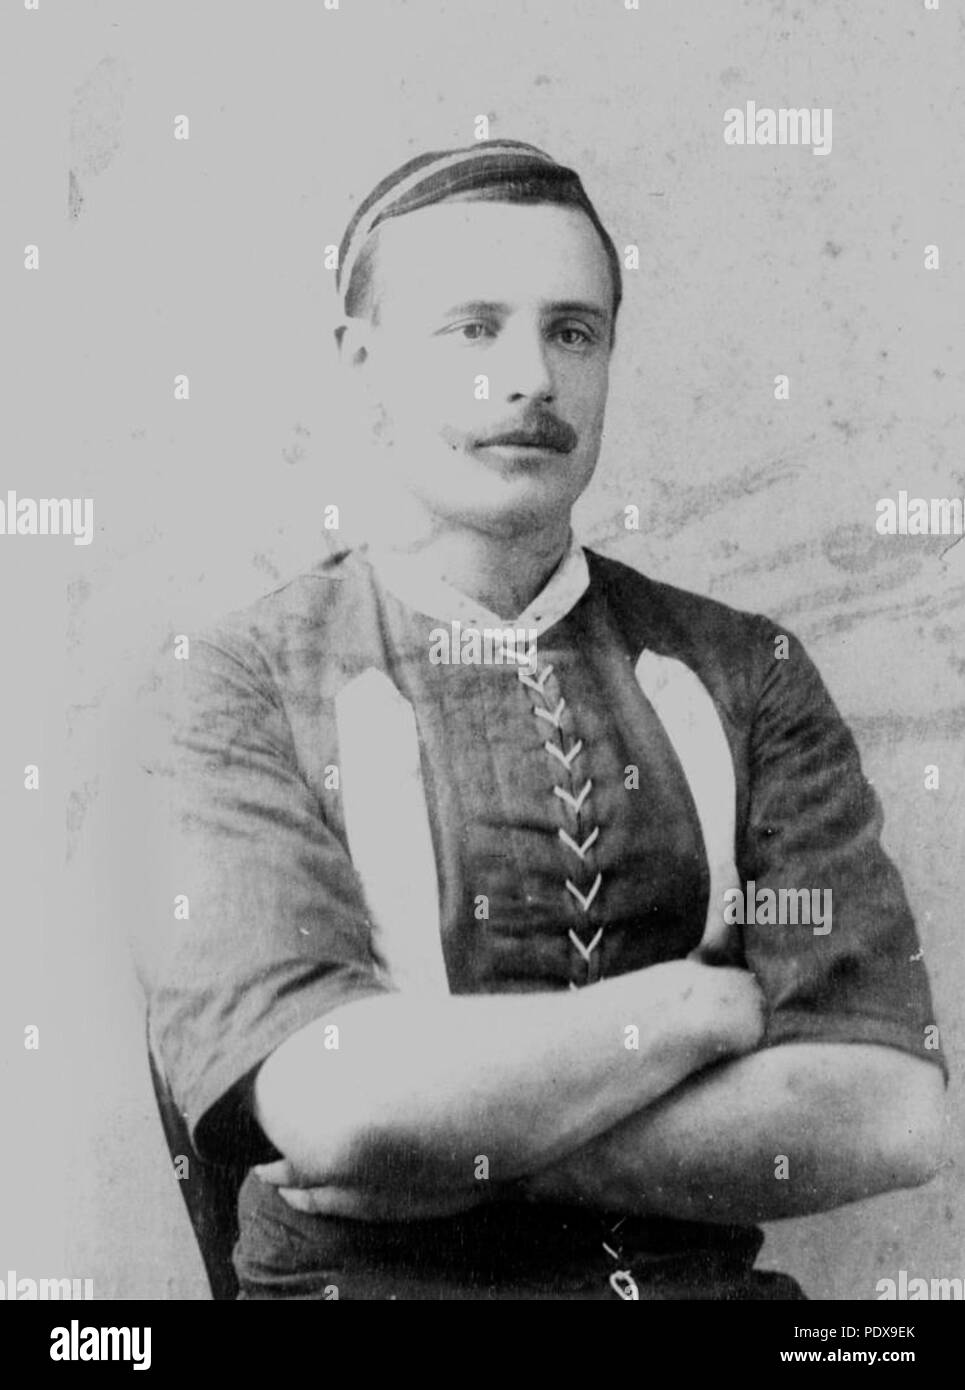 276 StateLibQld 1 90084 giovane in un abbigliamento sportivo, Charters Towers, 1880-1890 Foto Stock